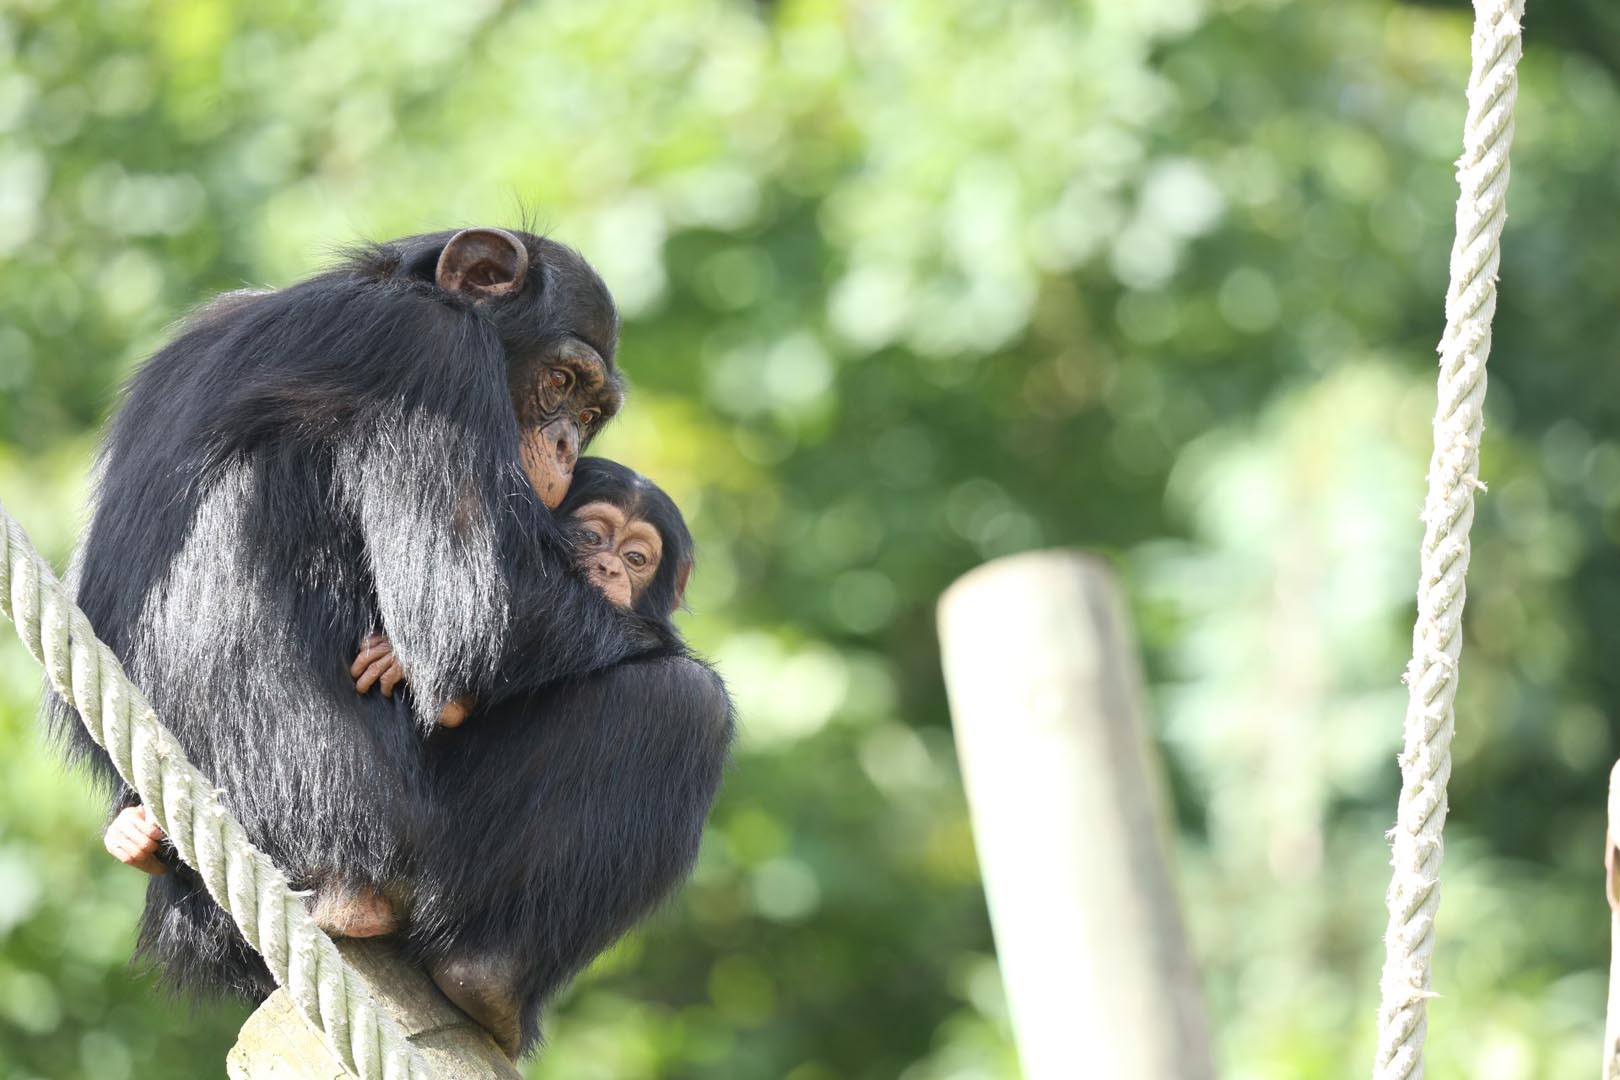 Chimpanzees Masindi Velu

Image: KATE GROUNDS